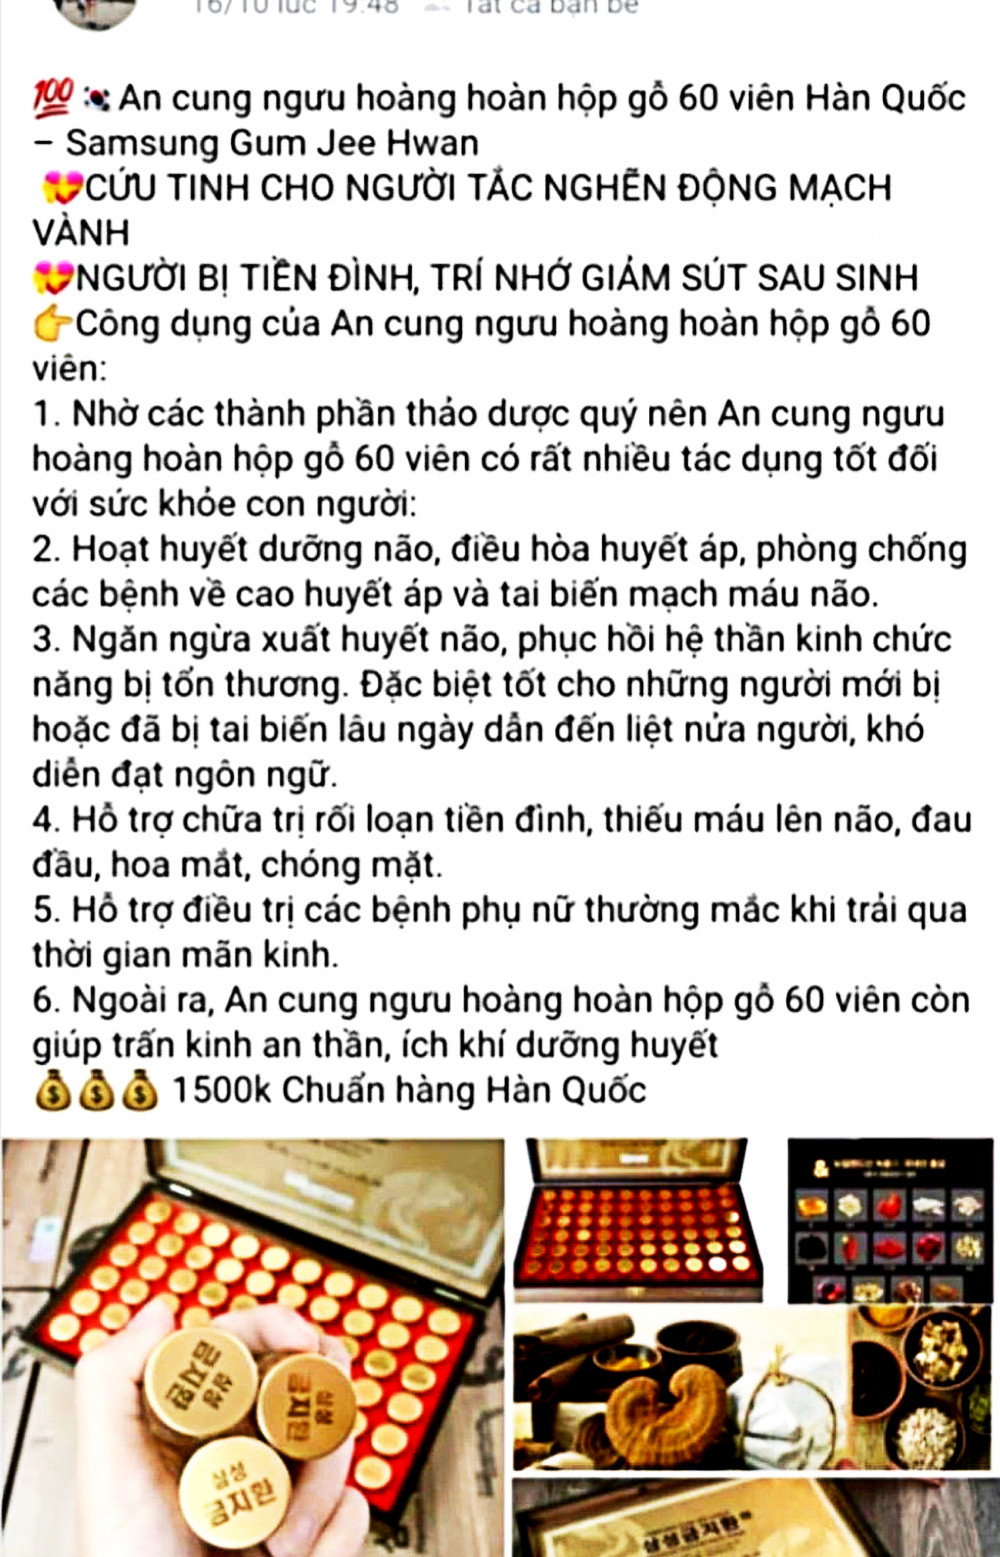 Trang Facebook và loại thuốc mà bà Nguyễn Thị L. mua uống và phải nhập viện  